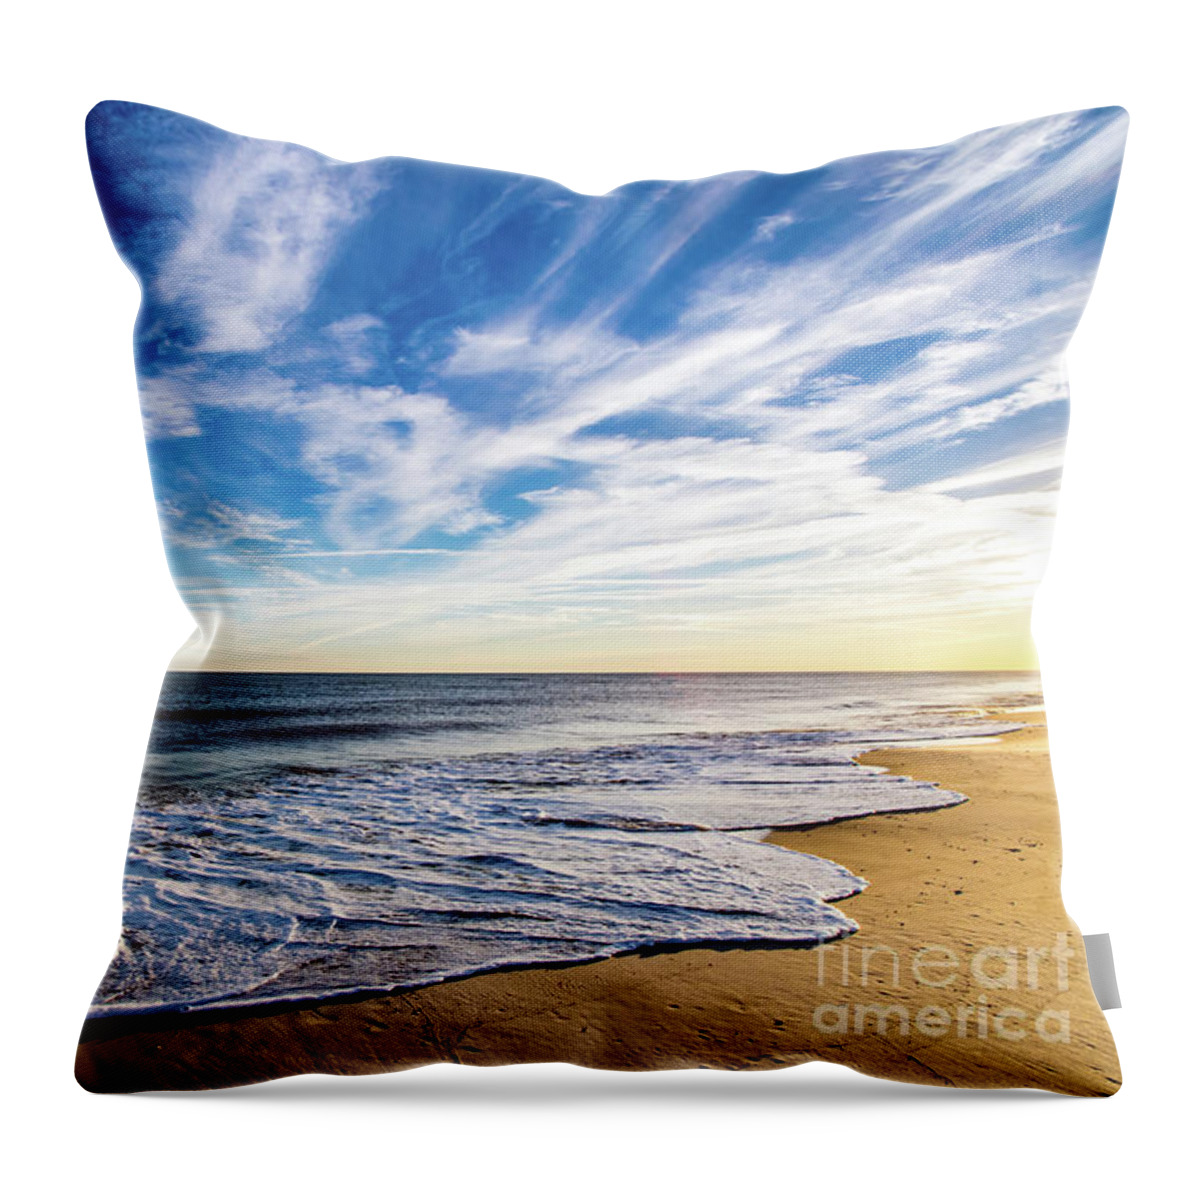 Golden Hour Throw Pillow featuring the photograph Golden Hour Beach Waves by Beachtown Views